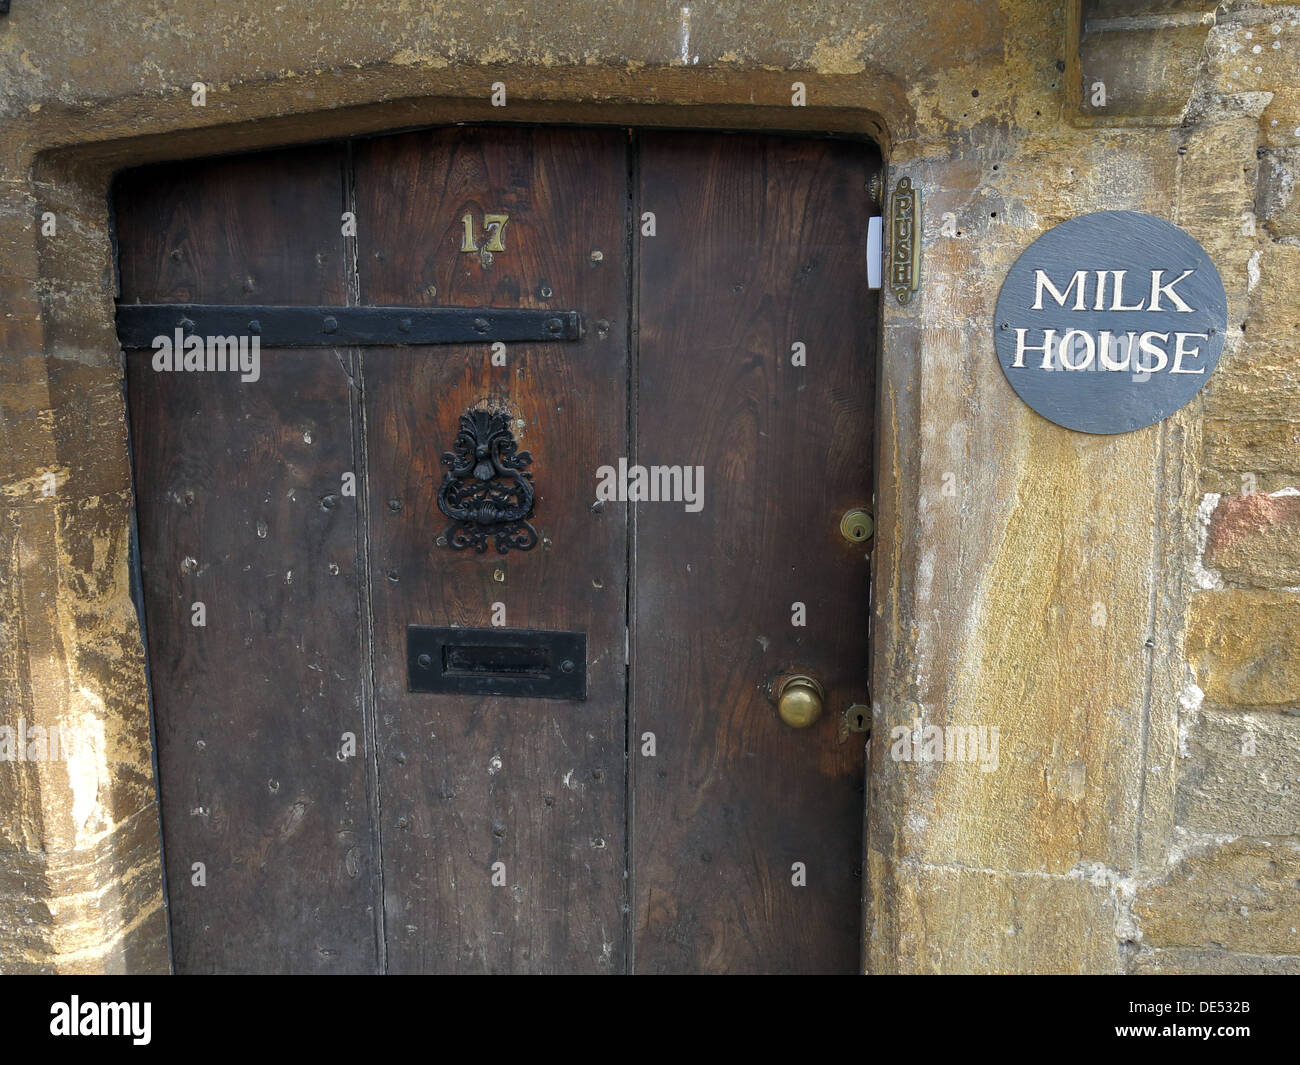 Milk House,17,door, Montecute, Somerset, England, UK Stock Photo